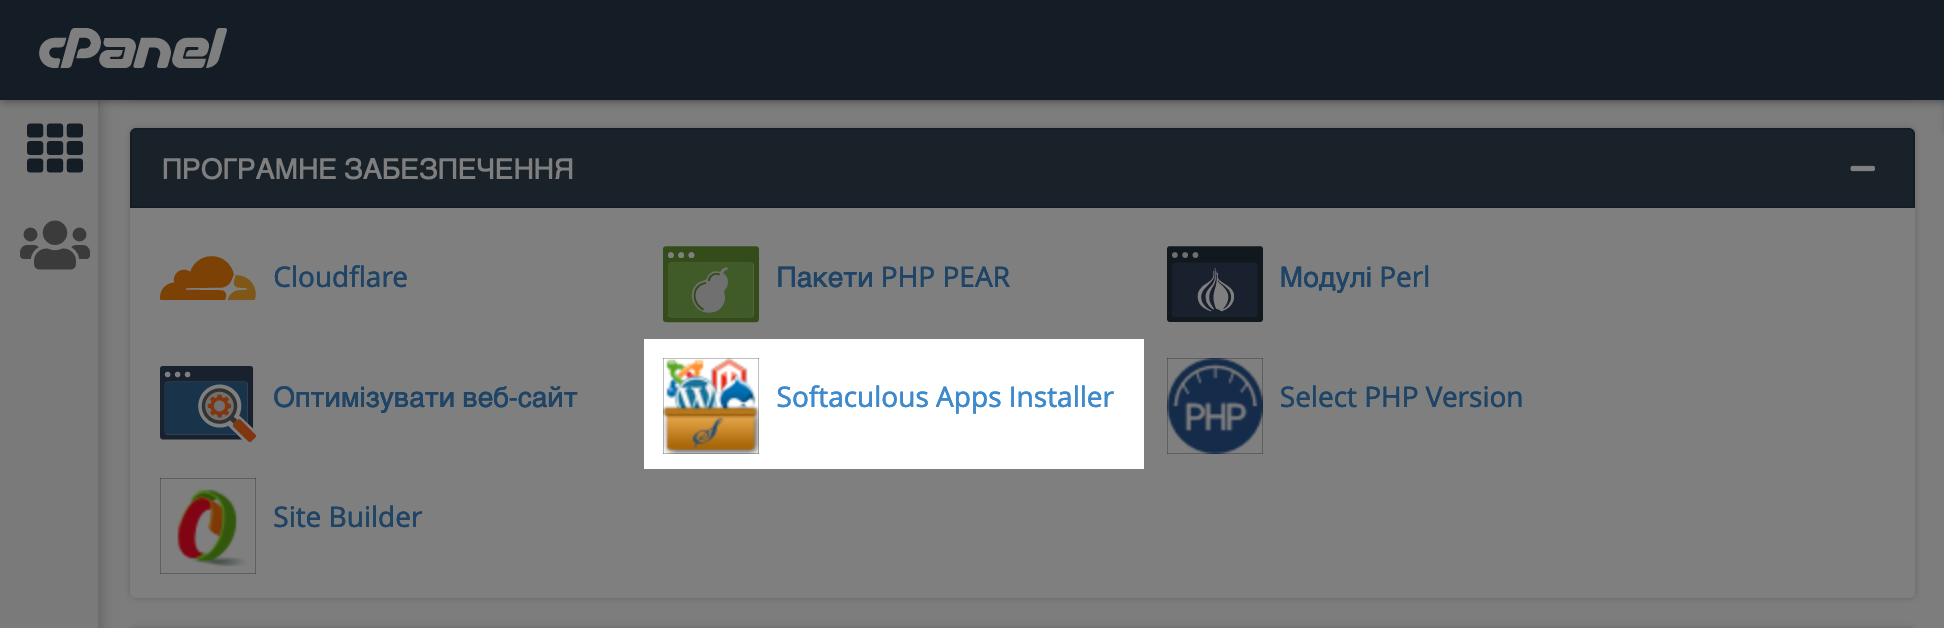 Розділ «Softaculous Apps Installer» в блоці «Програмне забезпечення» на головній сторінці cPanel